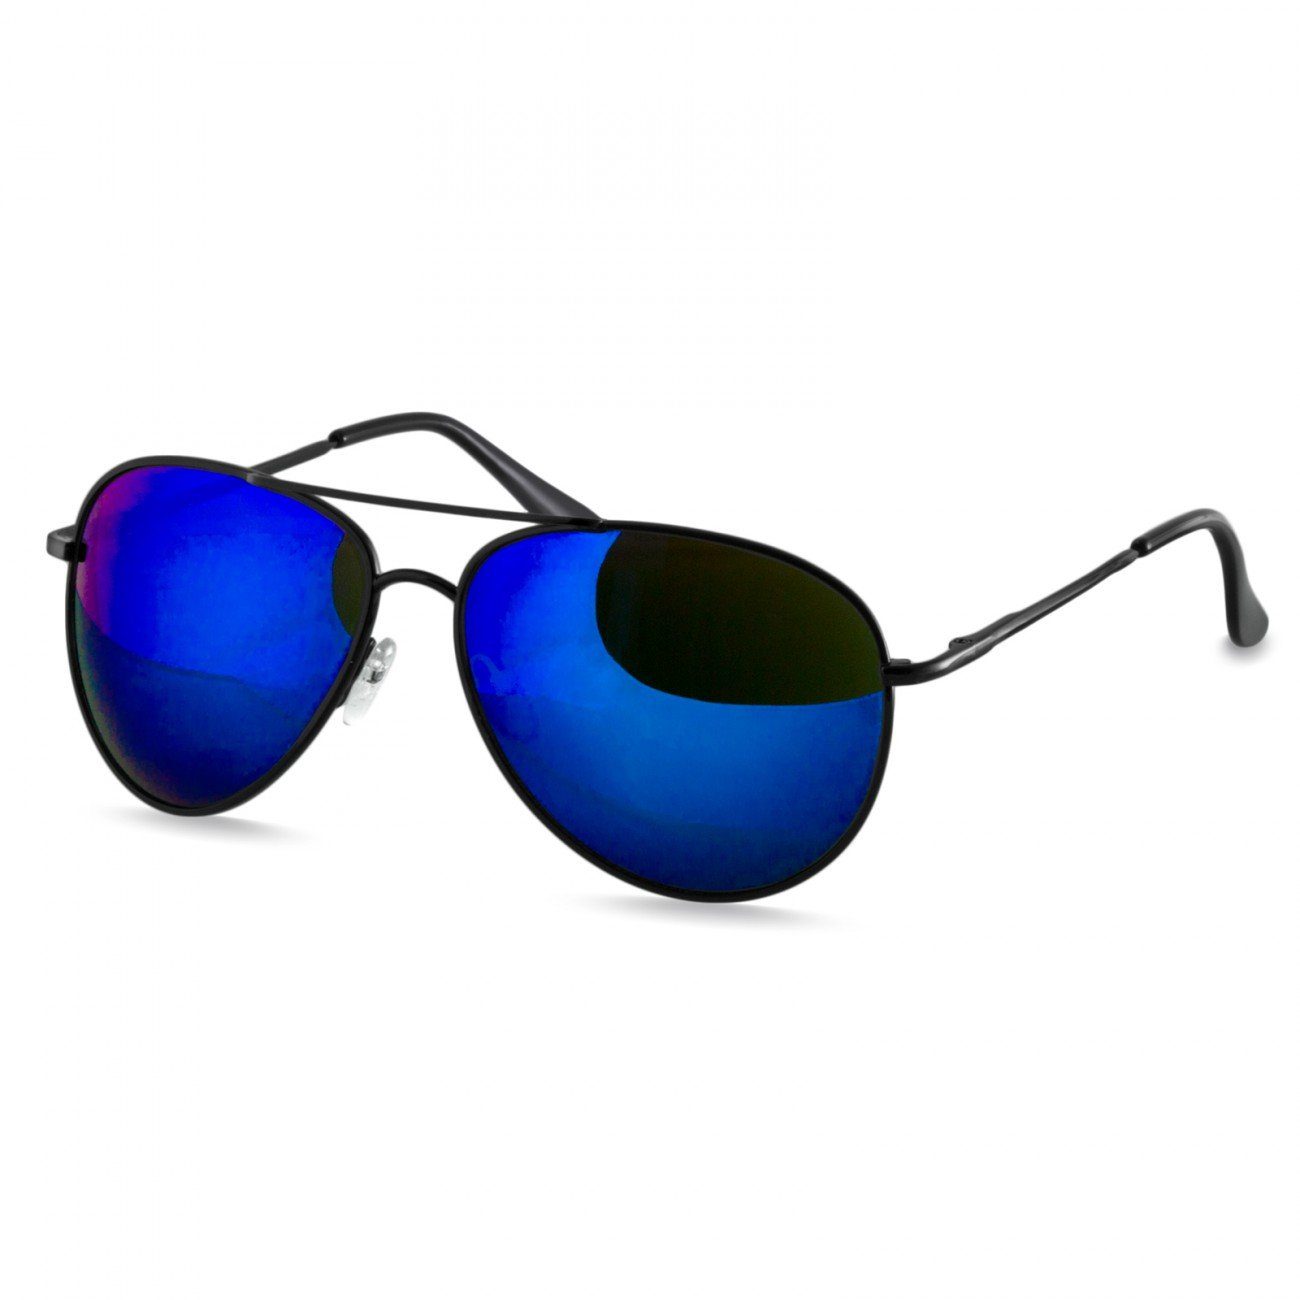 Caspar Sonnenbrille SG013 klassische Unisex Retro Pilotenbrille schwarz / blau verspiegelt